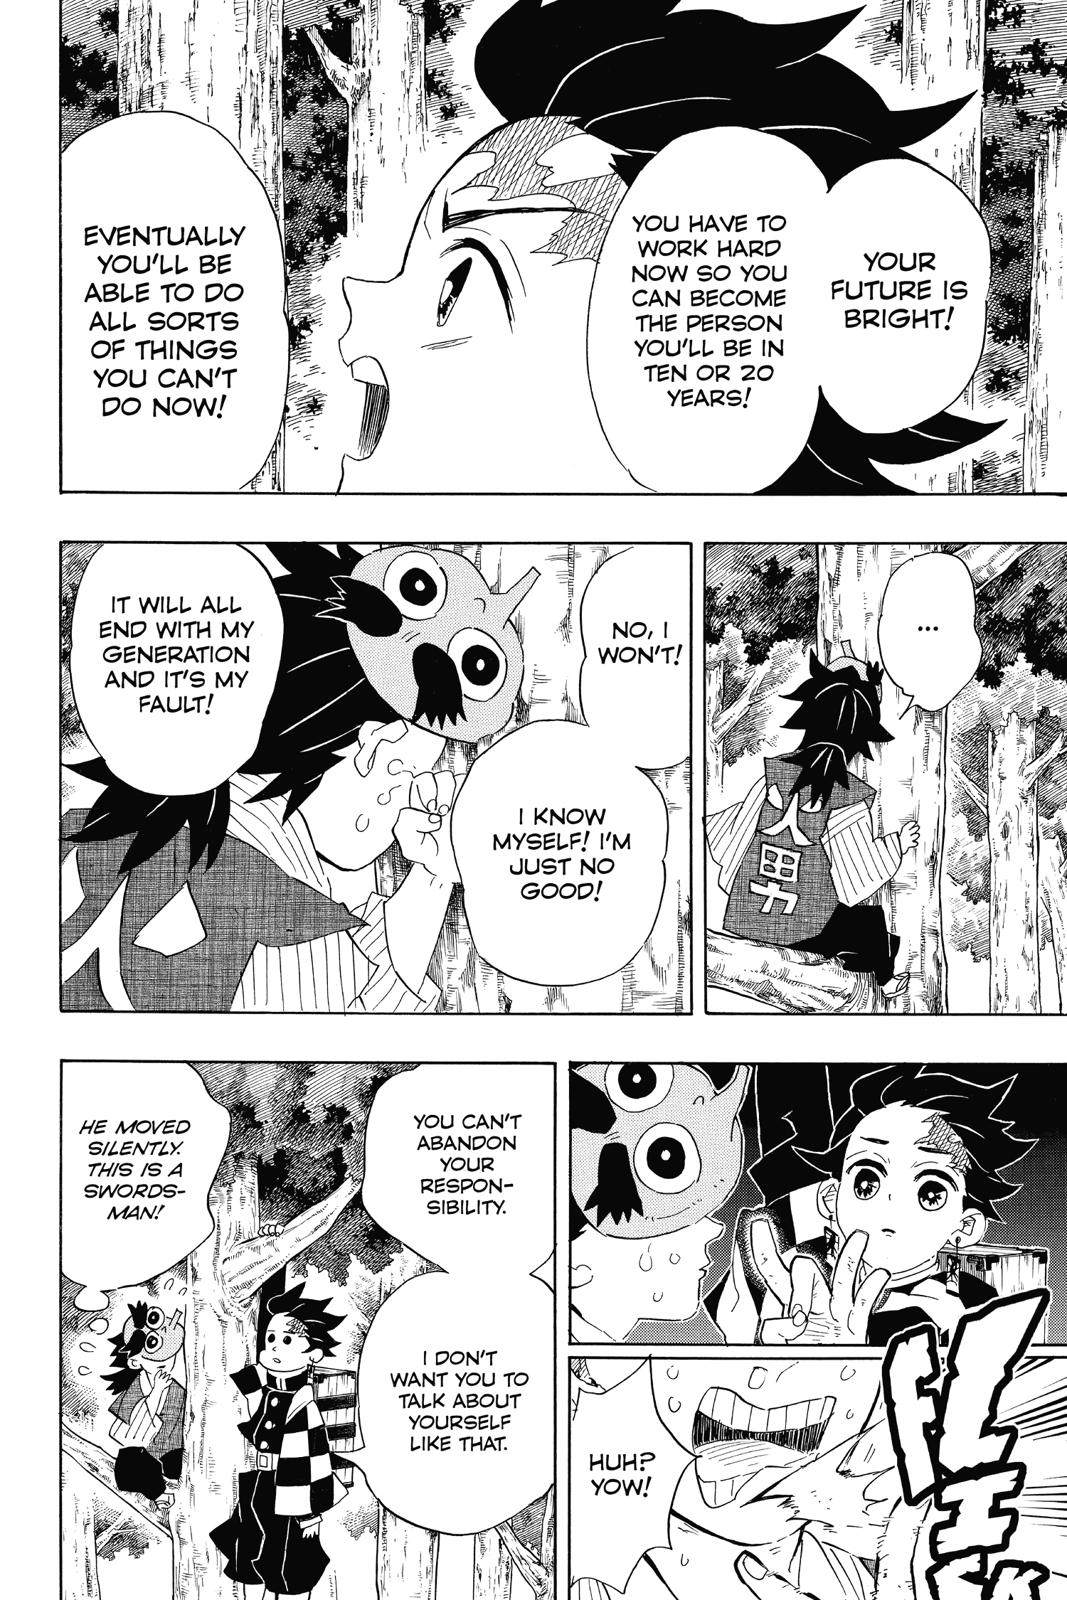 Demon Slayer Manga Manga Chapter - 103 - image 10